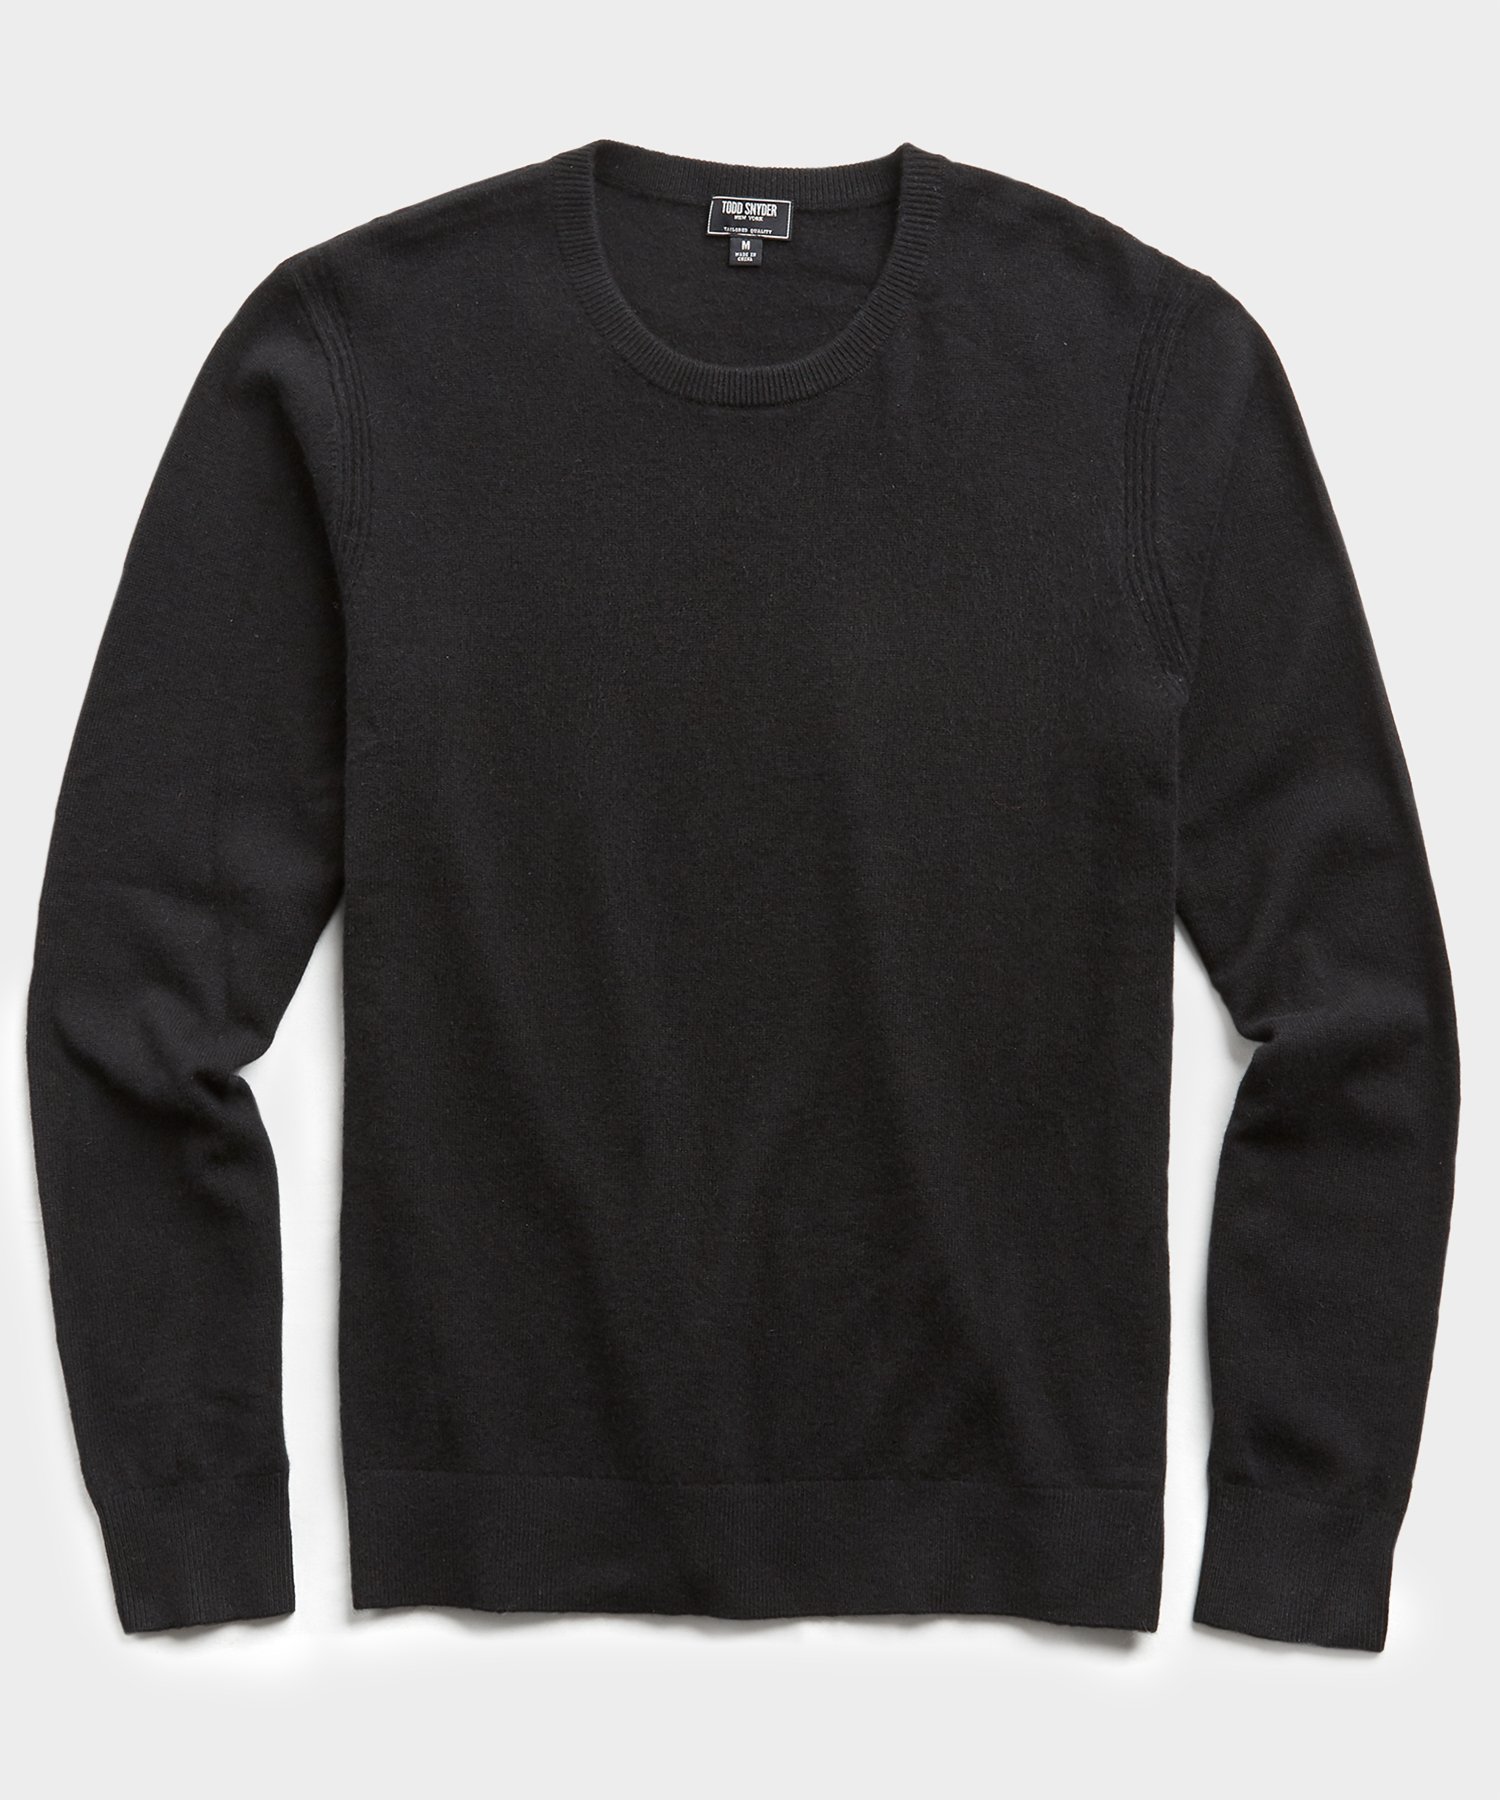 Cashmere Crewneck Sweater in Black | The Fashionisto